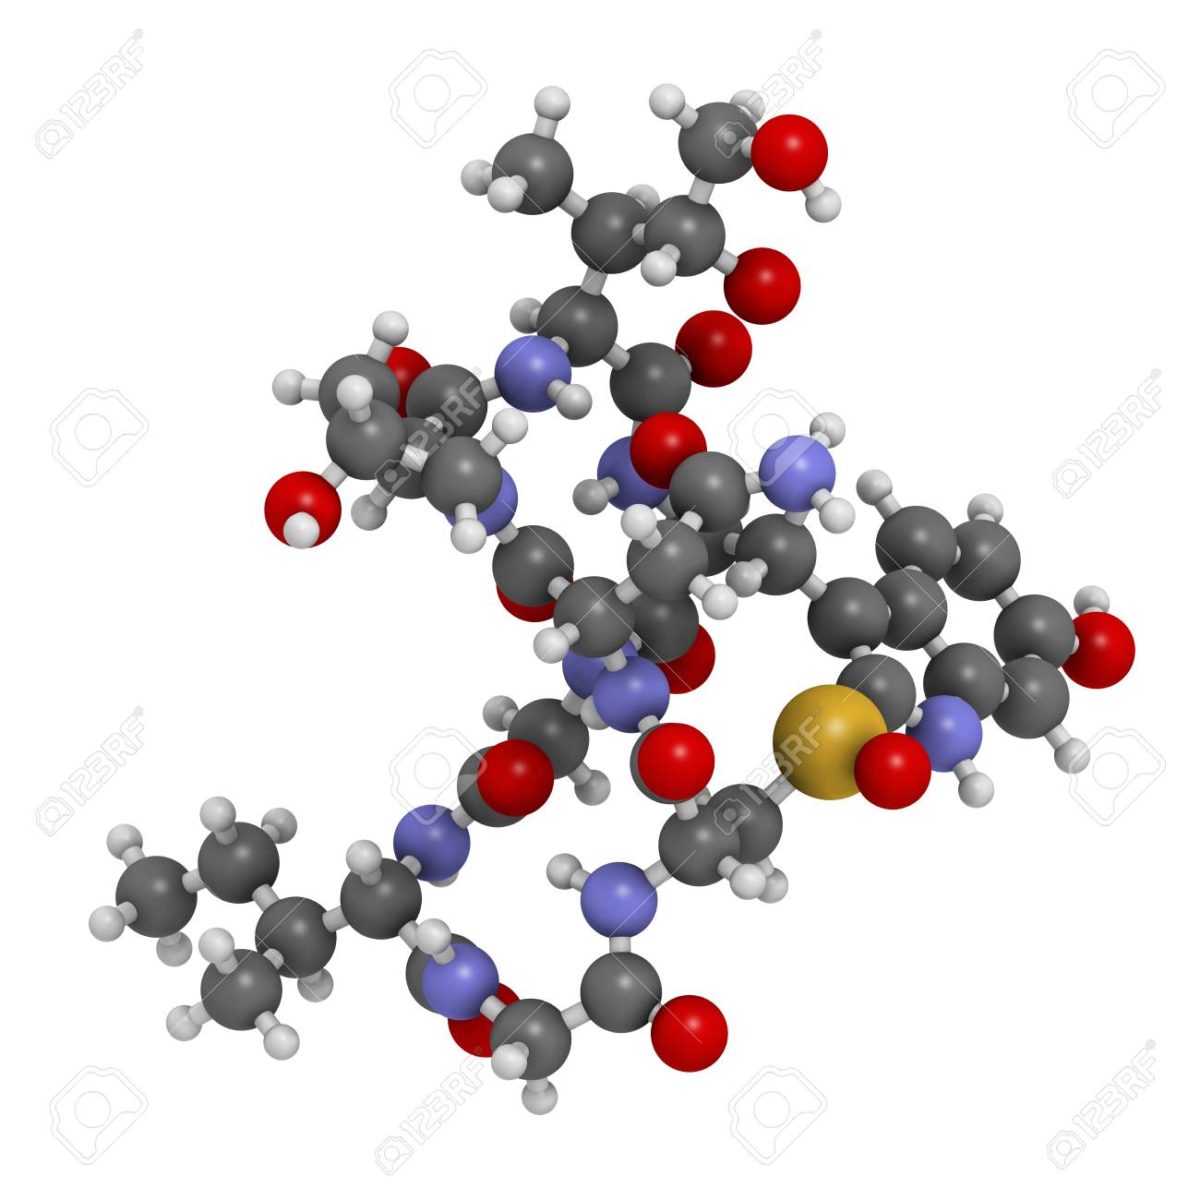 AEterna Zentaris : petite molécule pourrait devenir médicament